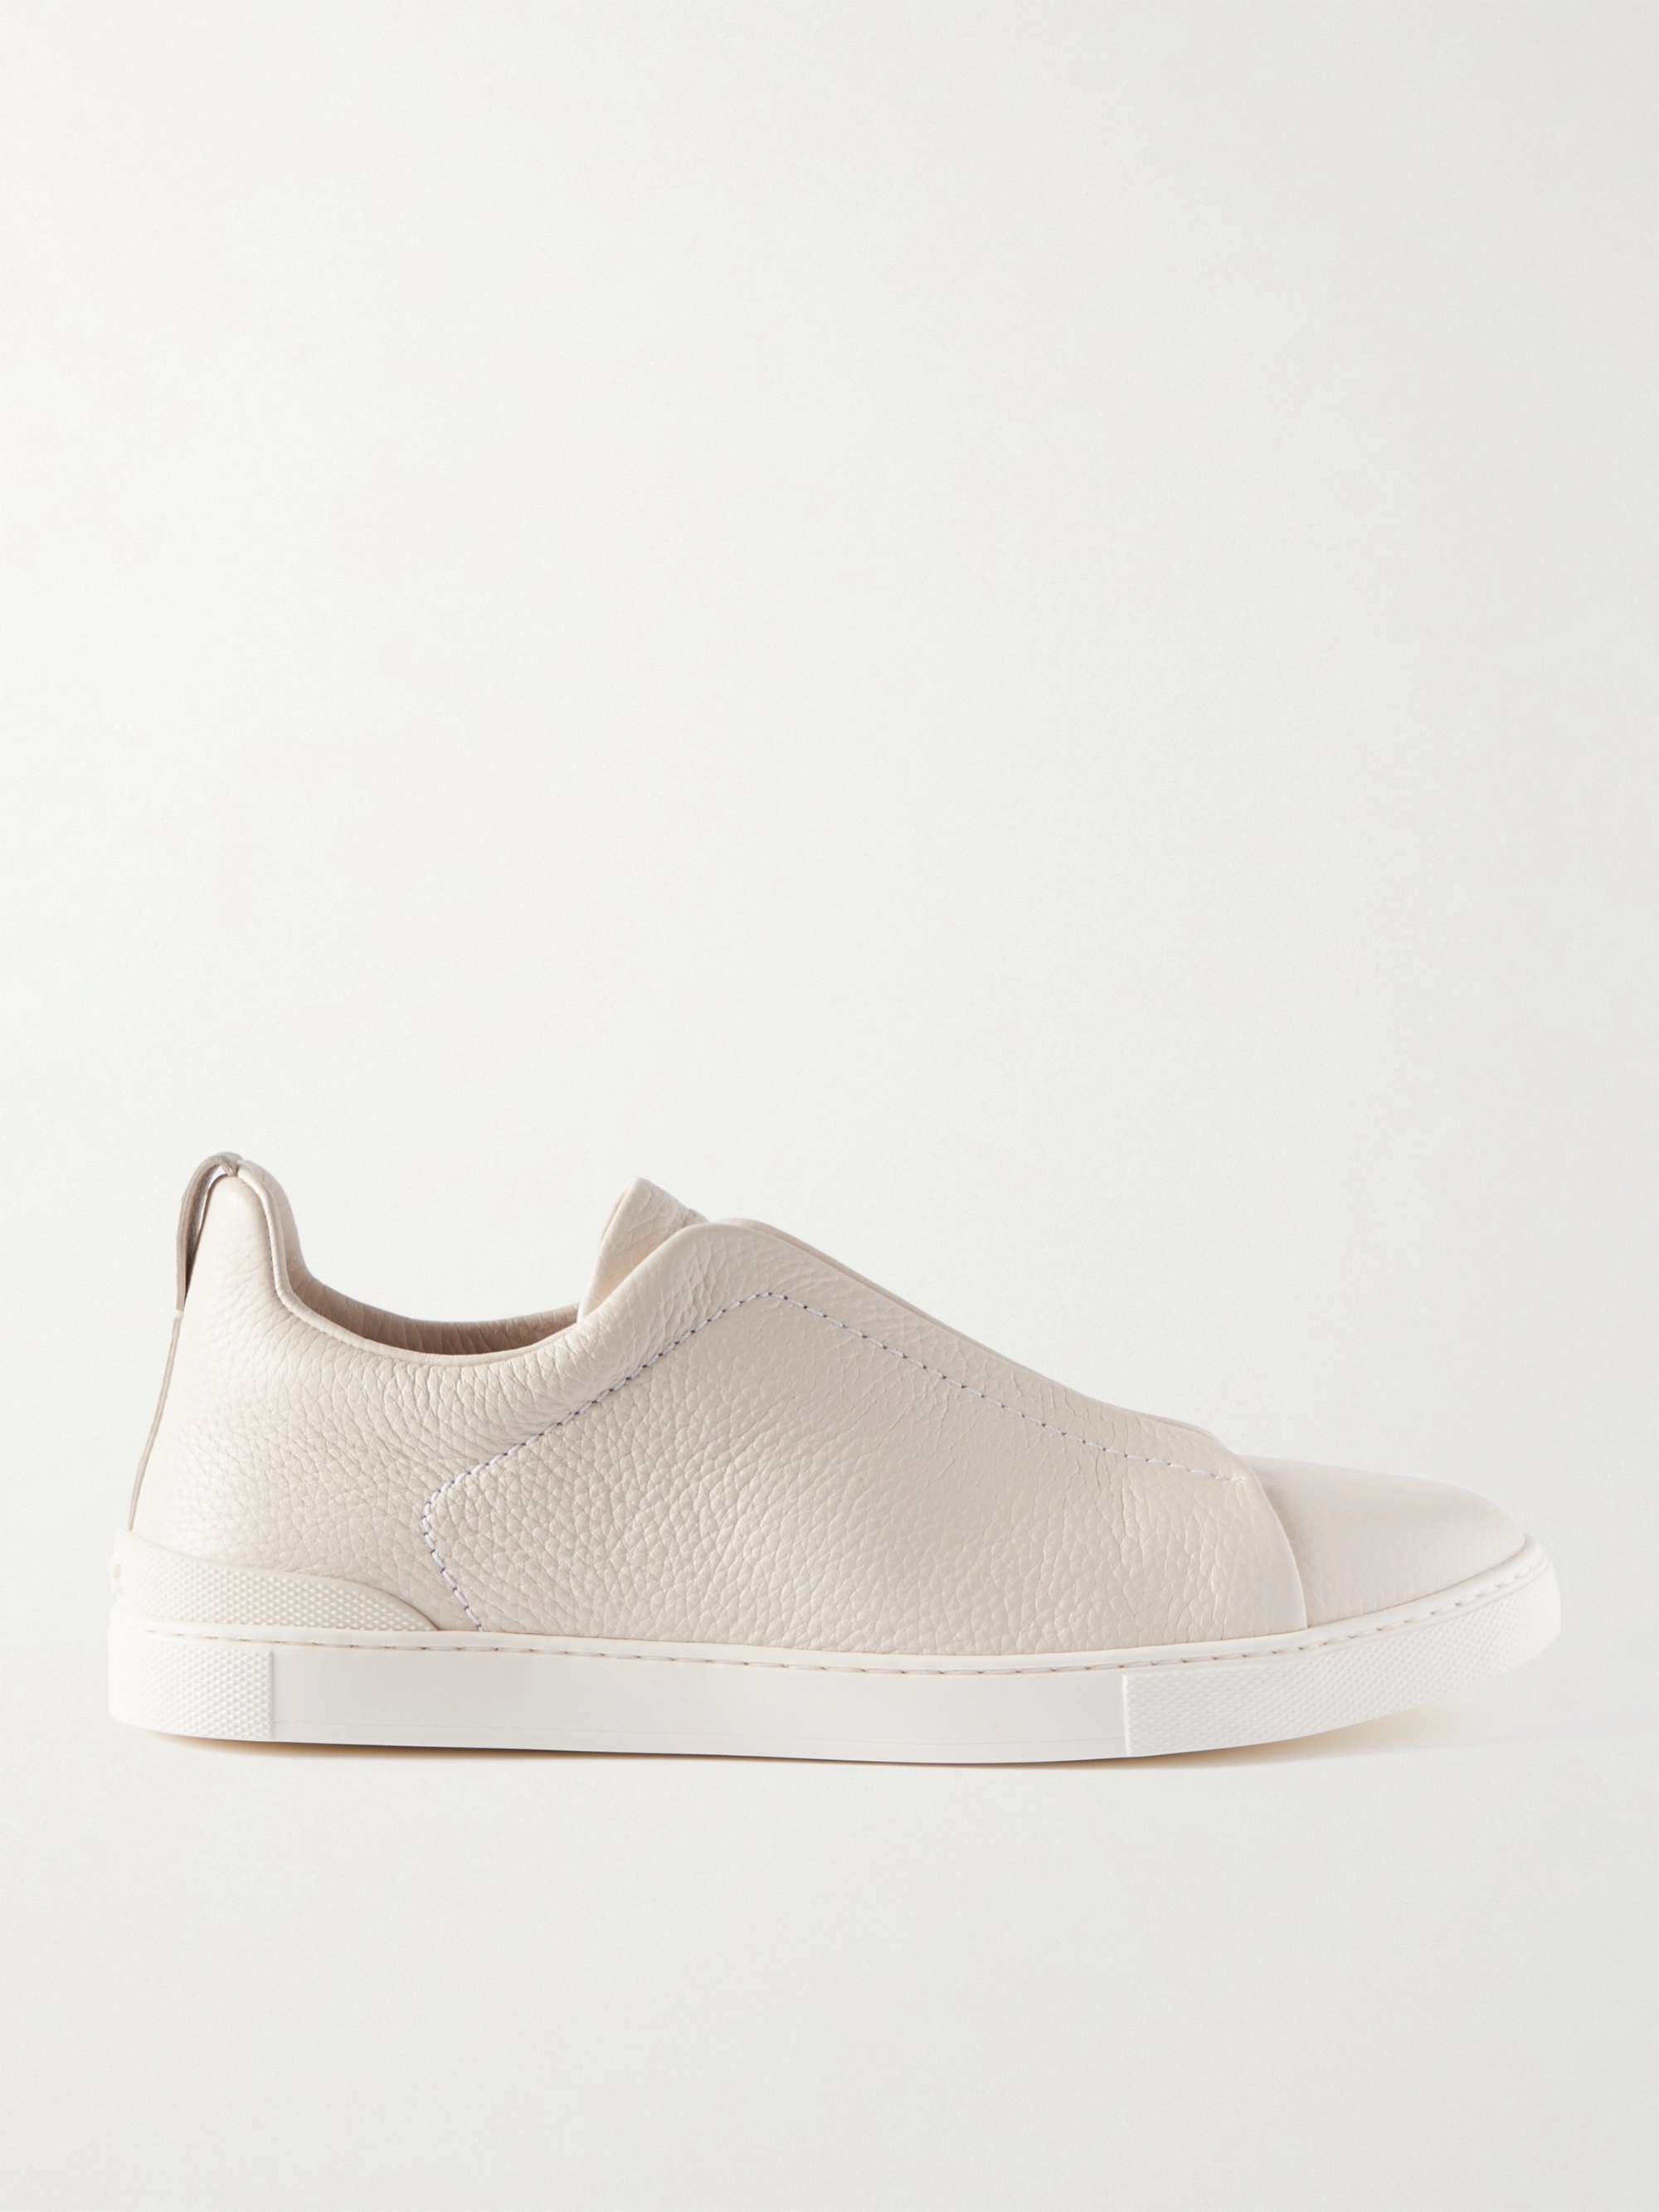 제냐 스니커즈 ZEGNA Full-Grain Leather Slip-On Sneakers,Off-white